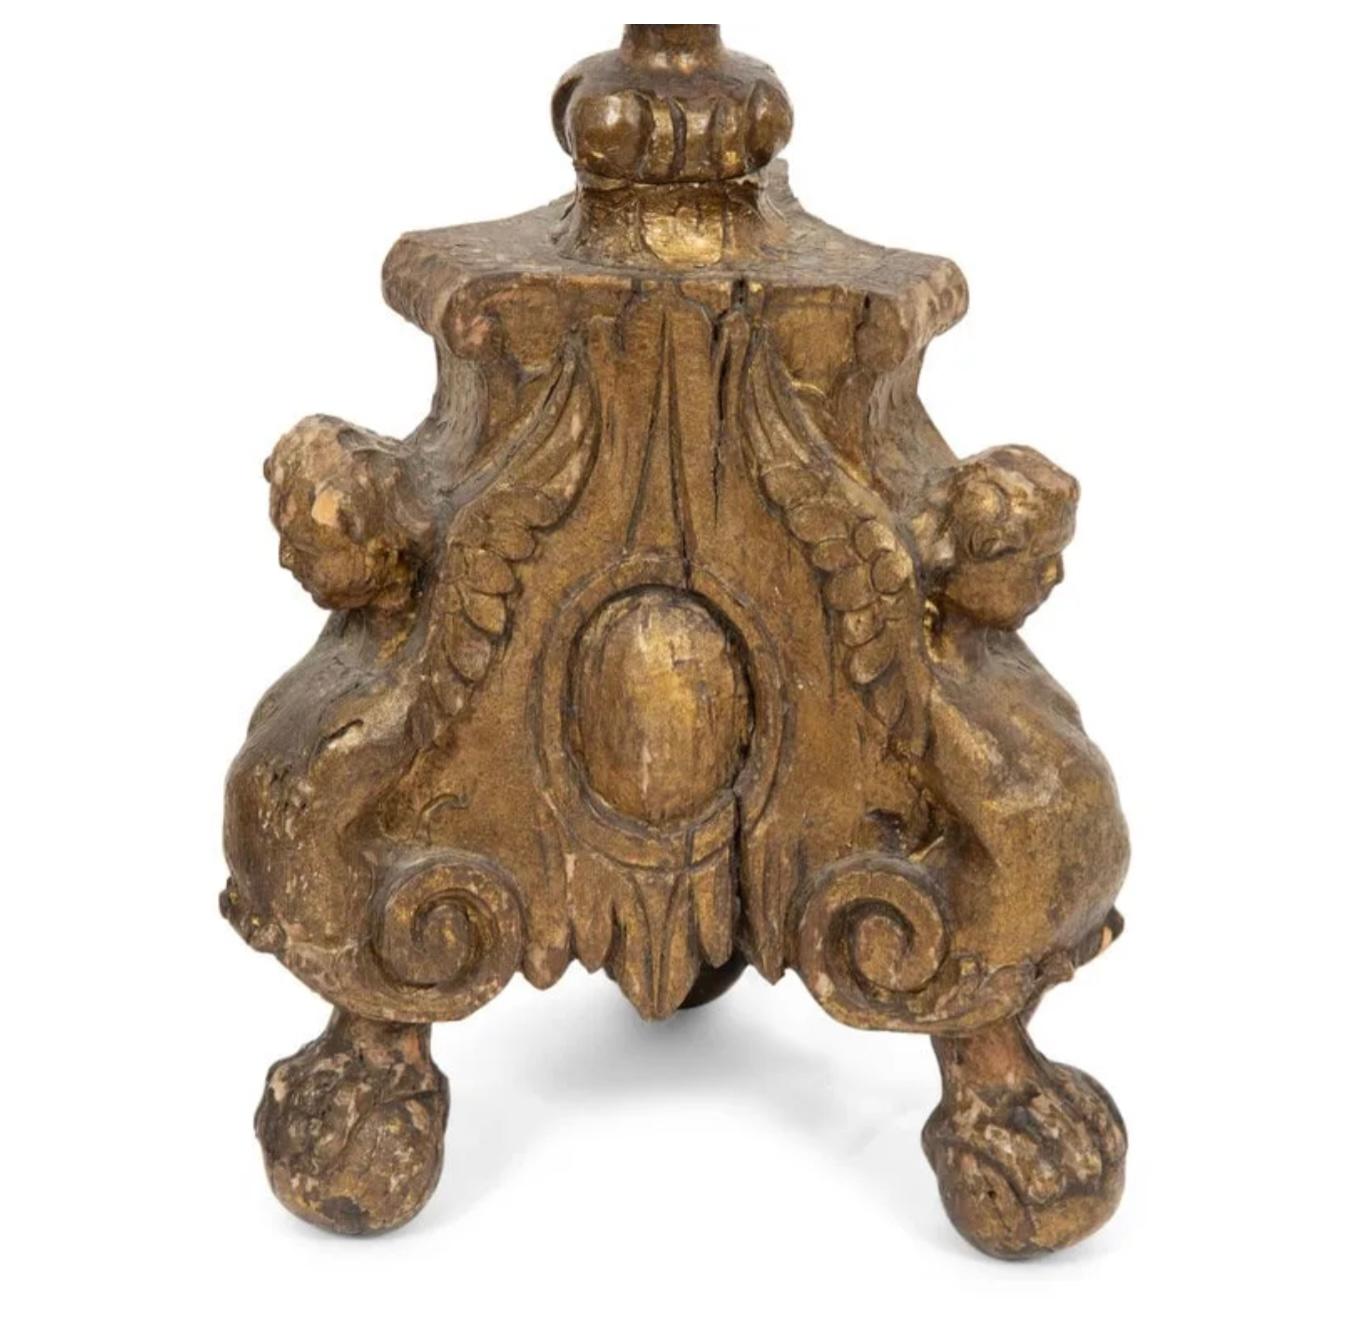 Paire de chandeliers en bois doré de Pricket du 18e siècle, maintenant montés comme lampes de table. Le bois sculpté et orné est soutenu par des bases tri-formées avec des têtes de chérubins et des pieds en forme de volutes. Belle patine ancienne.
